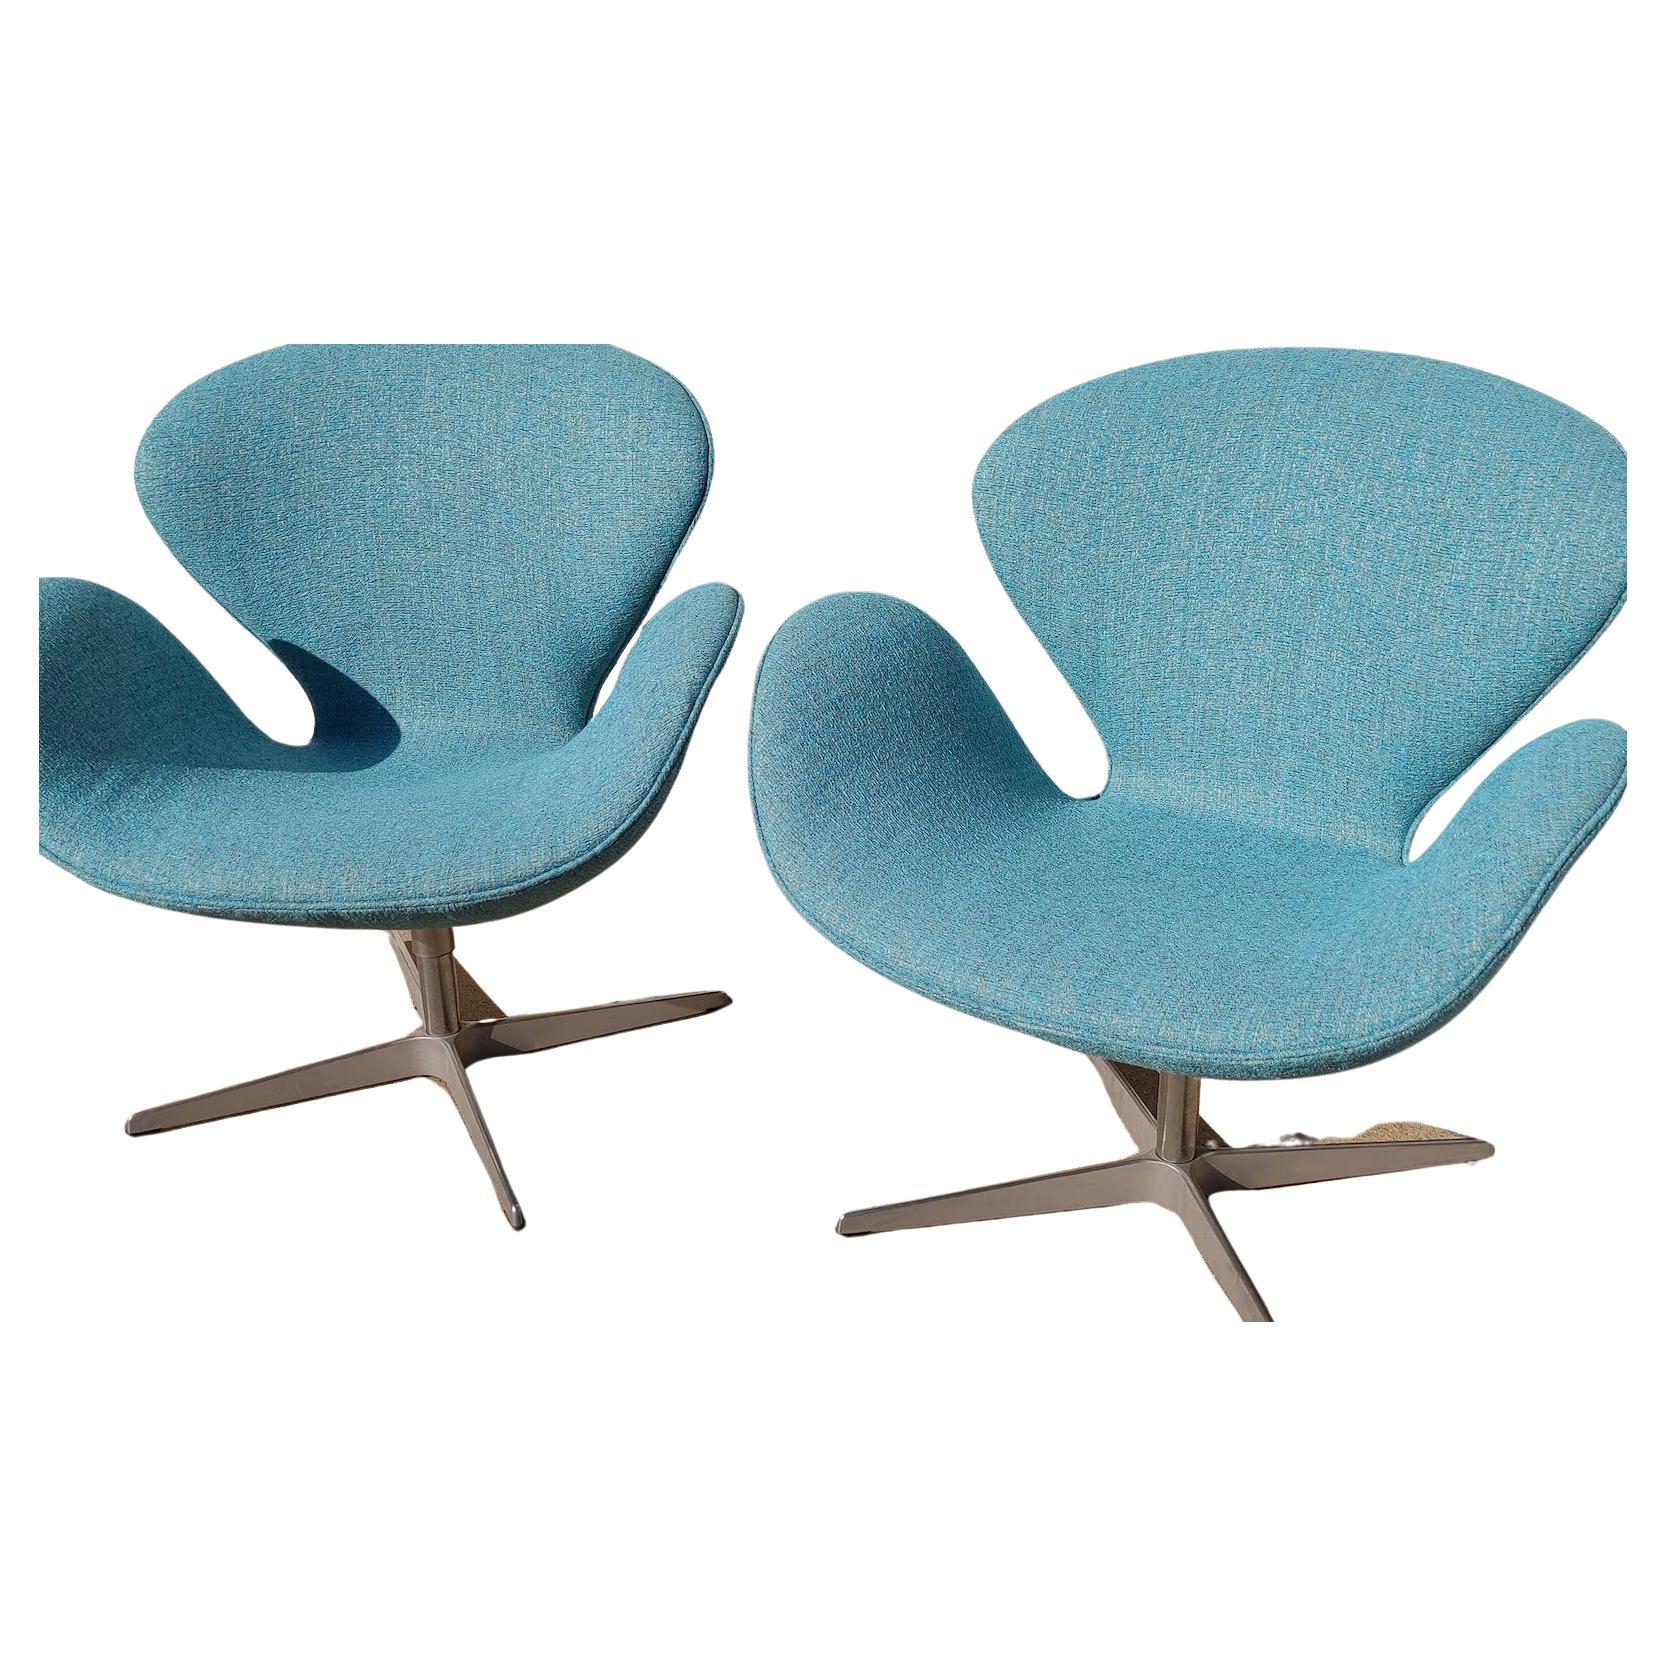 Paar Mid Century Modern Danish Modern Arne Jacobsen Swan Chairs

Verkauft als Paar. Überdurchschnittlicher Vintage-Zustand und strukturell gesund. Hat einige erwartete leichte Abnutzung auf Basen. Die Polsterung ist neu. Die Bilder der Angebote für